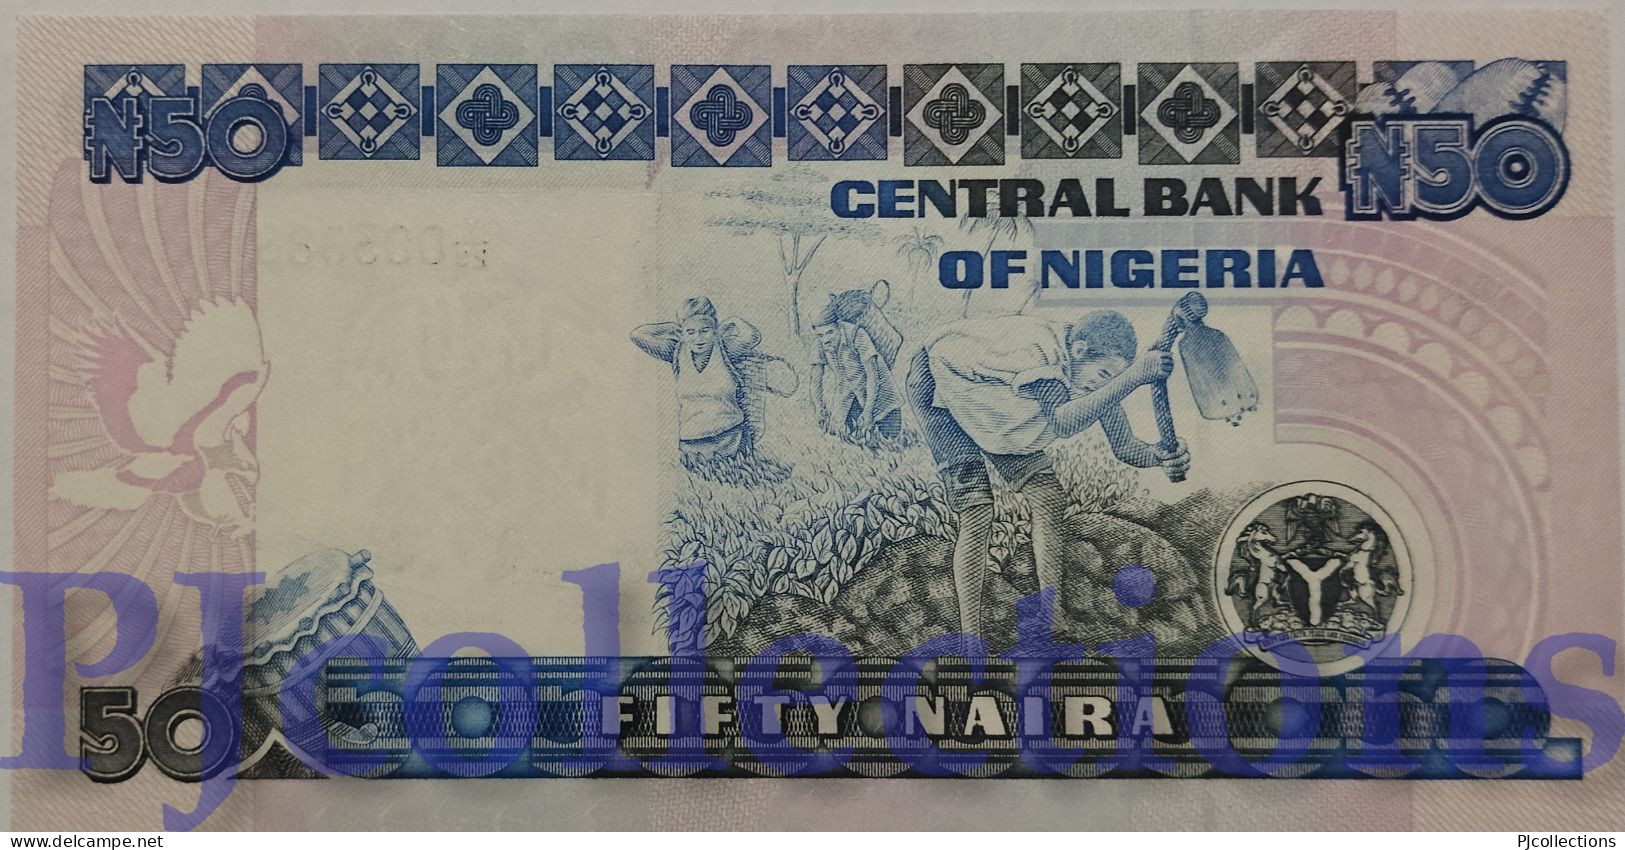 NIGERIA 50 NAIRA 1991 PICK 27c UNC LOW SERIAL NUMBER "Y/29 003086" - Nigeria